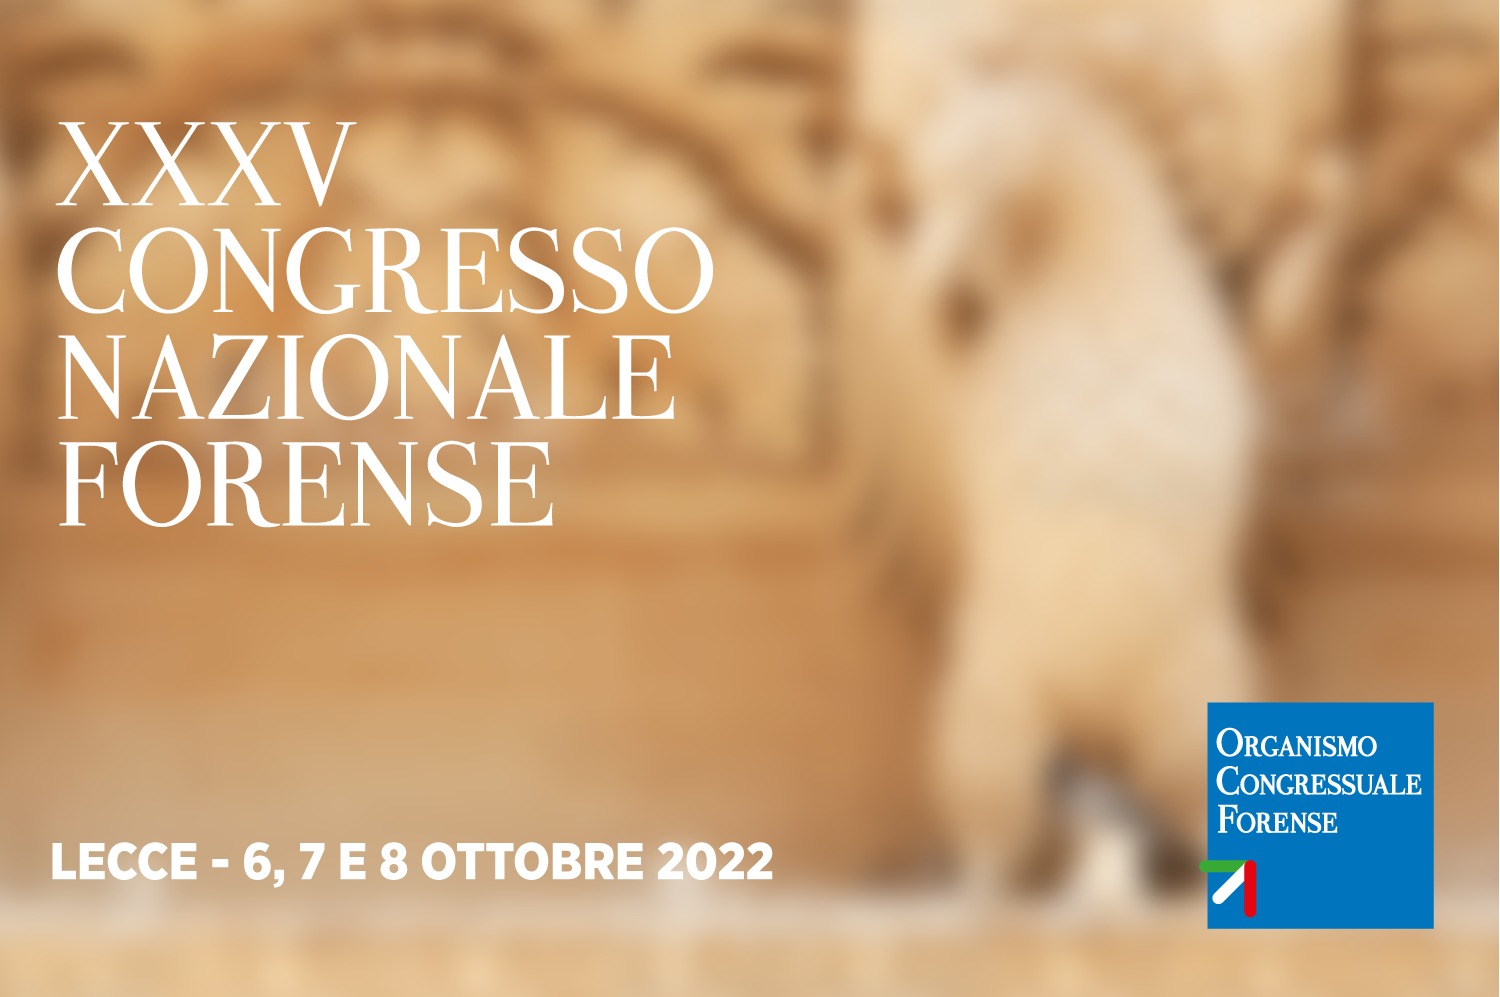 Convocazione Assemblea per l’Elezione dei Delegati al XXXV Congresso Nazionale Forense di Lecce (6-8 ottobre 2022).